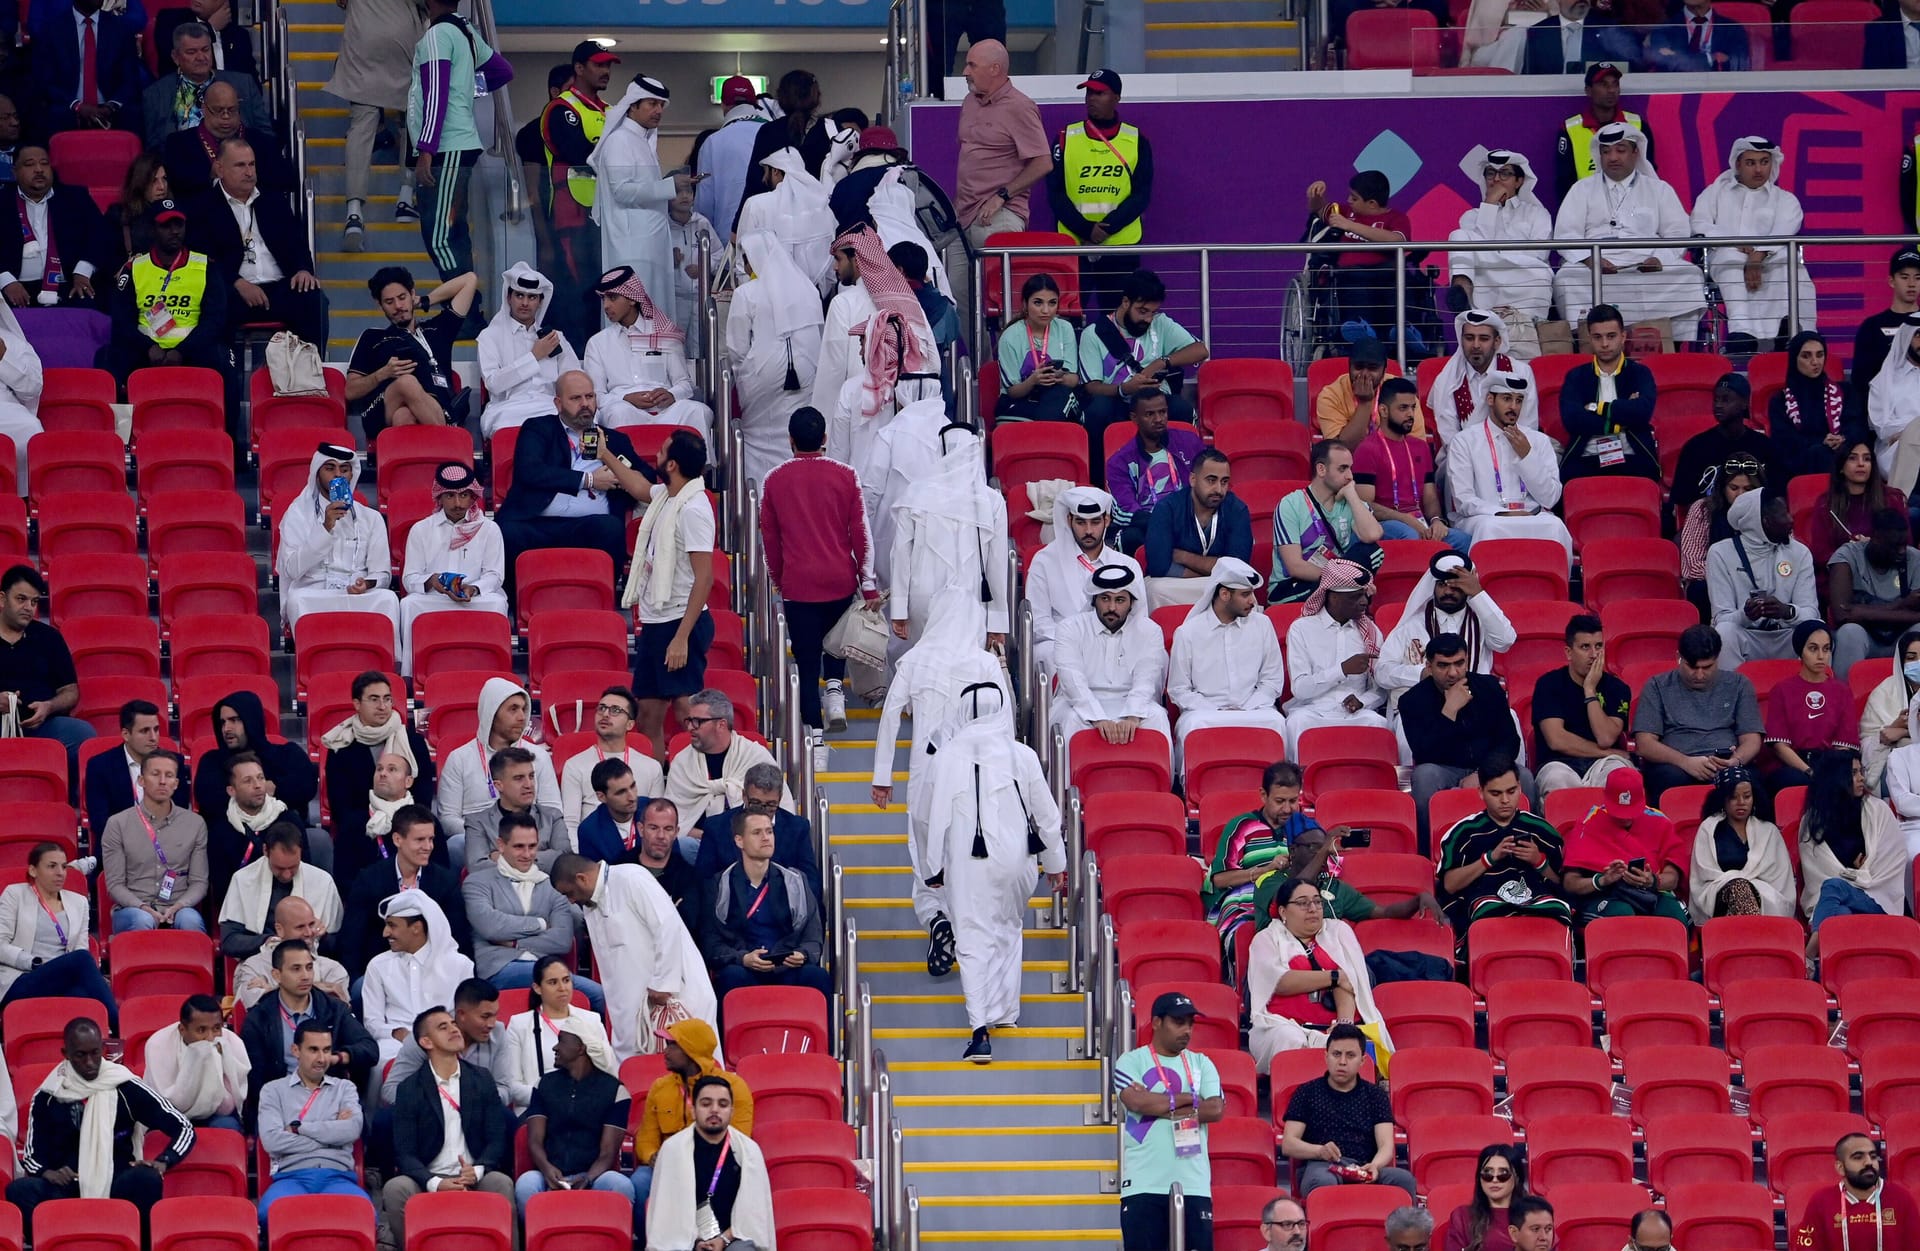 Das WM-Eröffnungsspiel wird für Katar zur doppelten Blamage: Sportlich ist das Team des Wüstenstaats hoffnungslos unterlegen und liegt bereits nach 31 Minuten mit 0:2 gegen Ecuador zurück. Doch statt ihrer Elf auf dem Platz beizustehen, verlassen Tausende Zuschauer schon vor dem Halbzeitpfiff ihre Sitze im Al-Bayt-Stadion. Hohn und Spott ist dem Gastgeber in der Folge sicher.